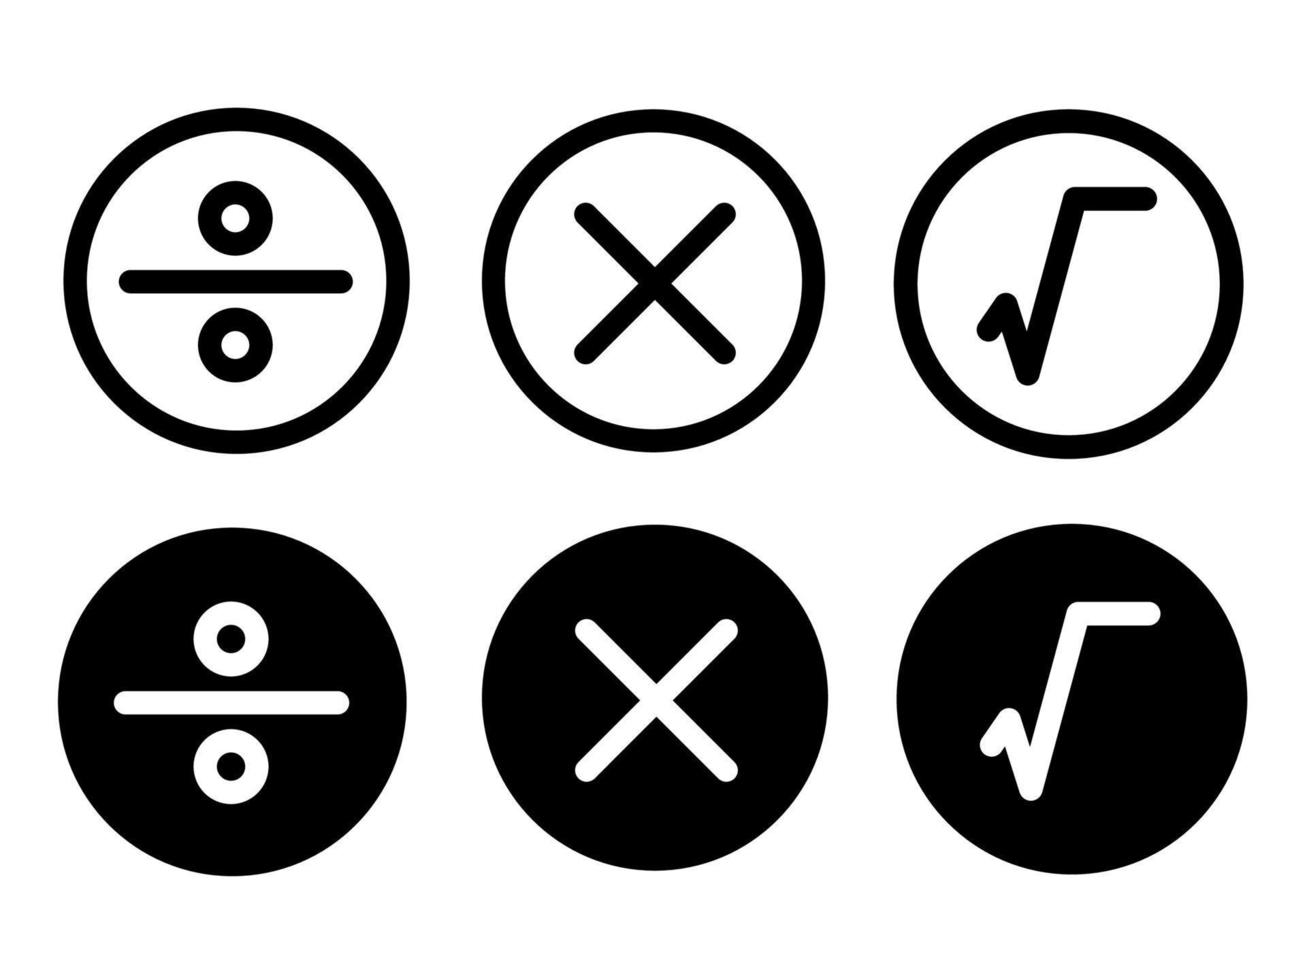 conjunto de mais menos multiplicar ícones de estilo moderno símbolo de matemática raiz estão localizados em fundos brancos e pretos. o pacote tem seis ícones. vetor